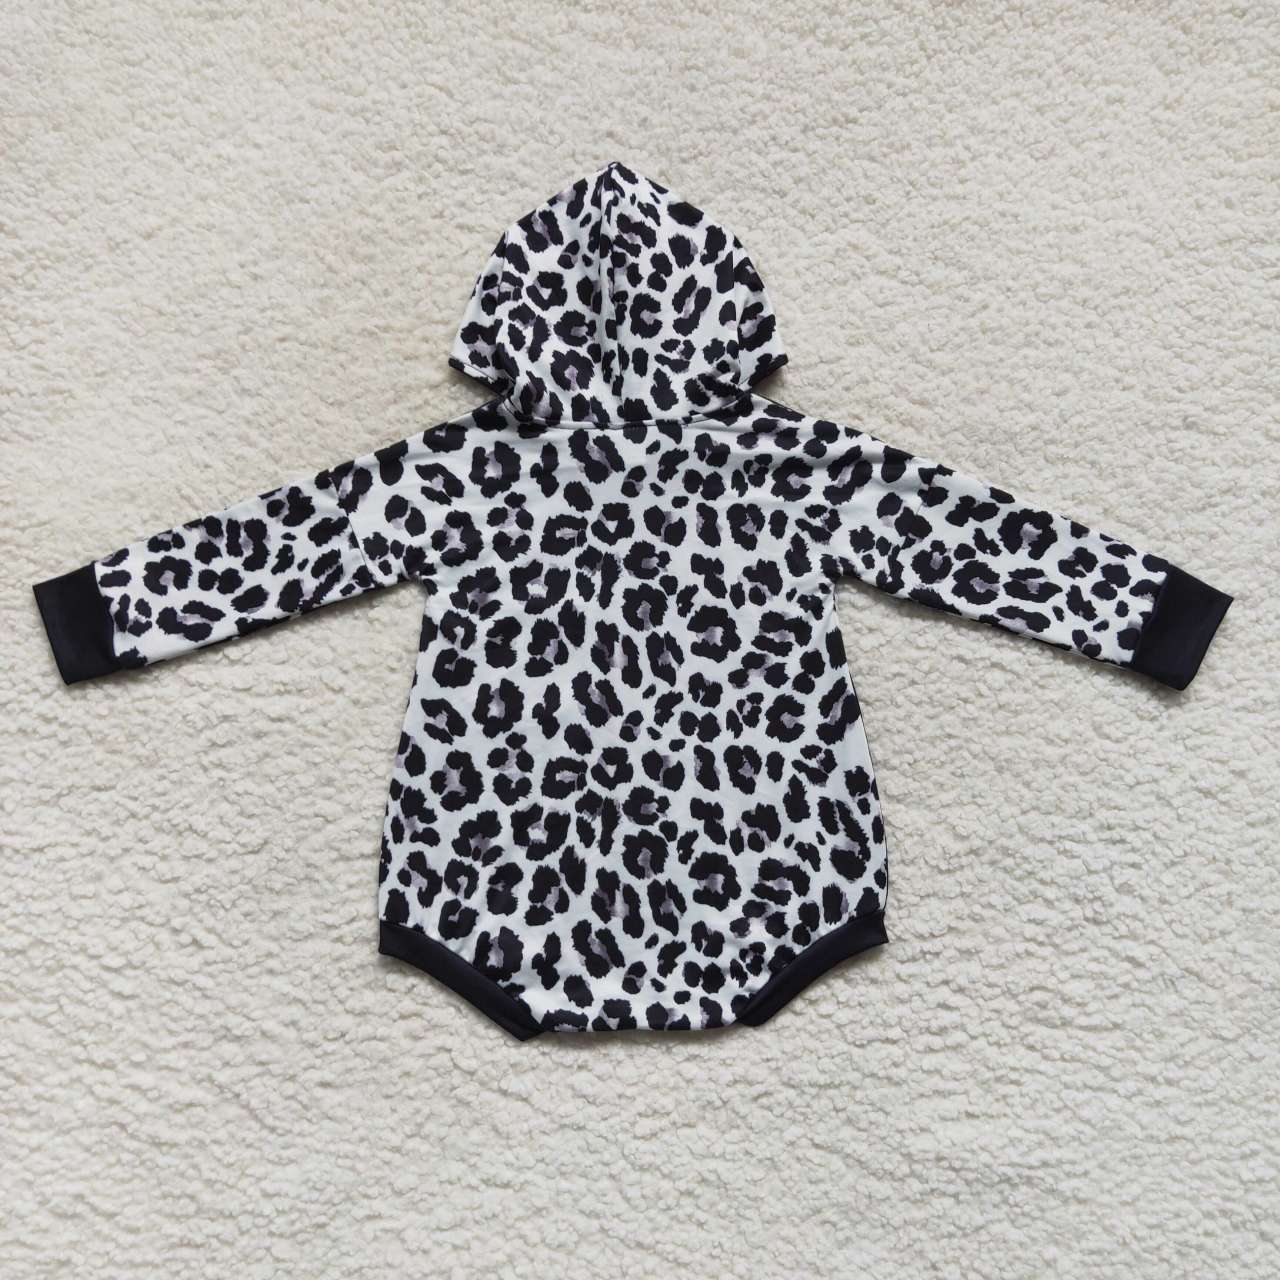 LR0594 Black leopard print baby hoodie romper